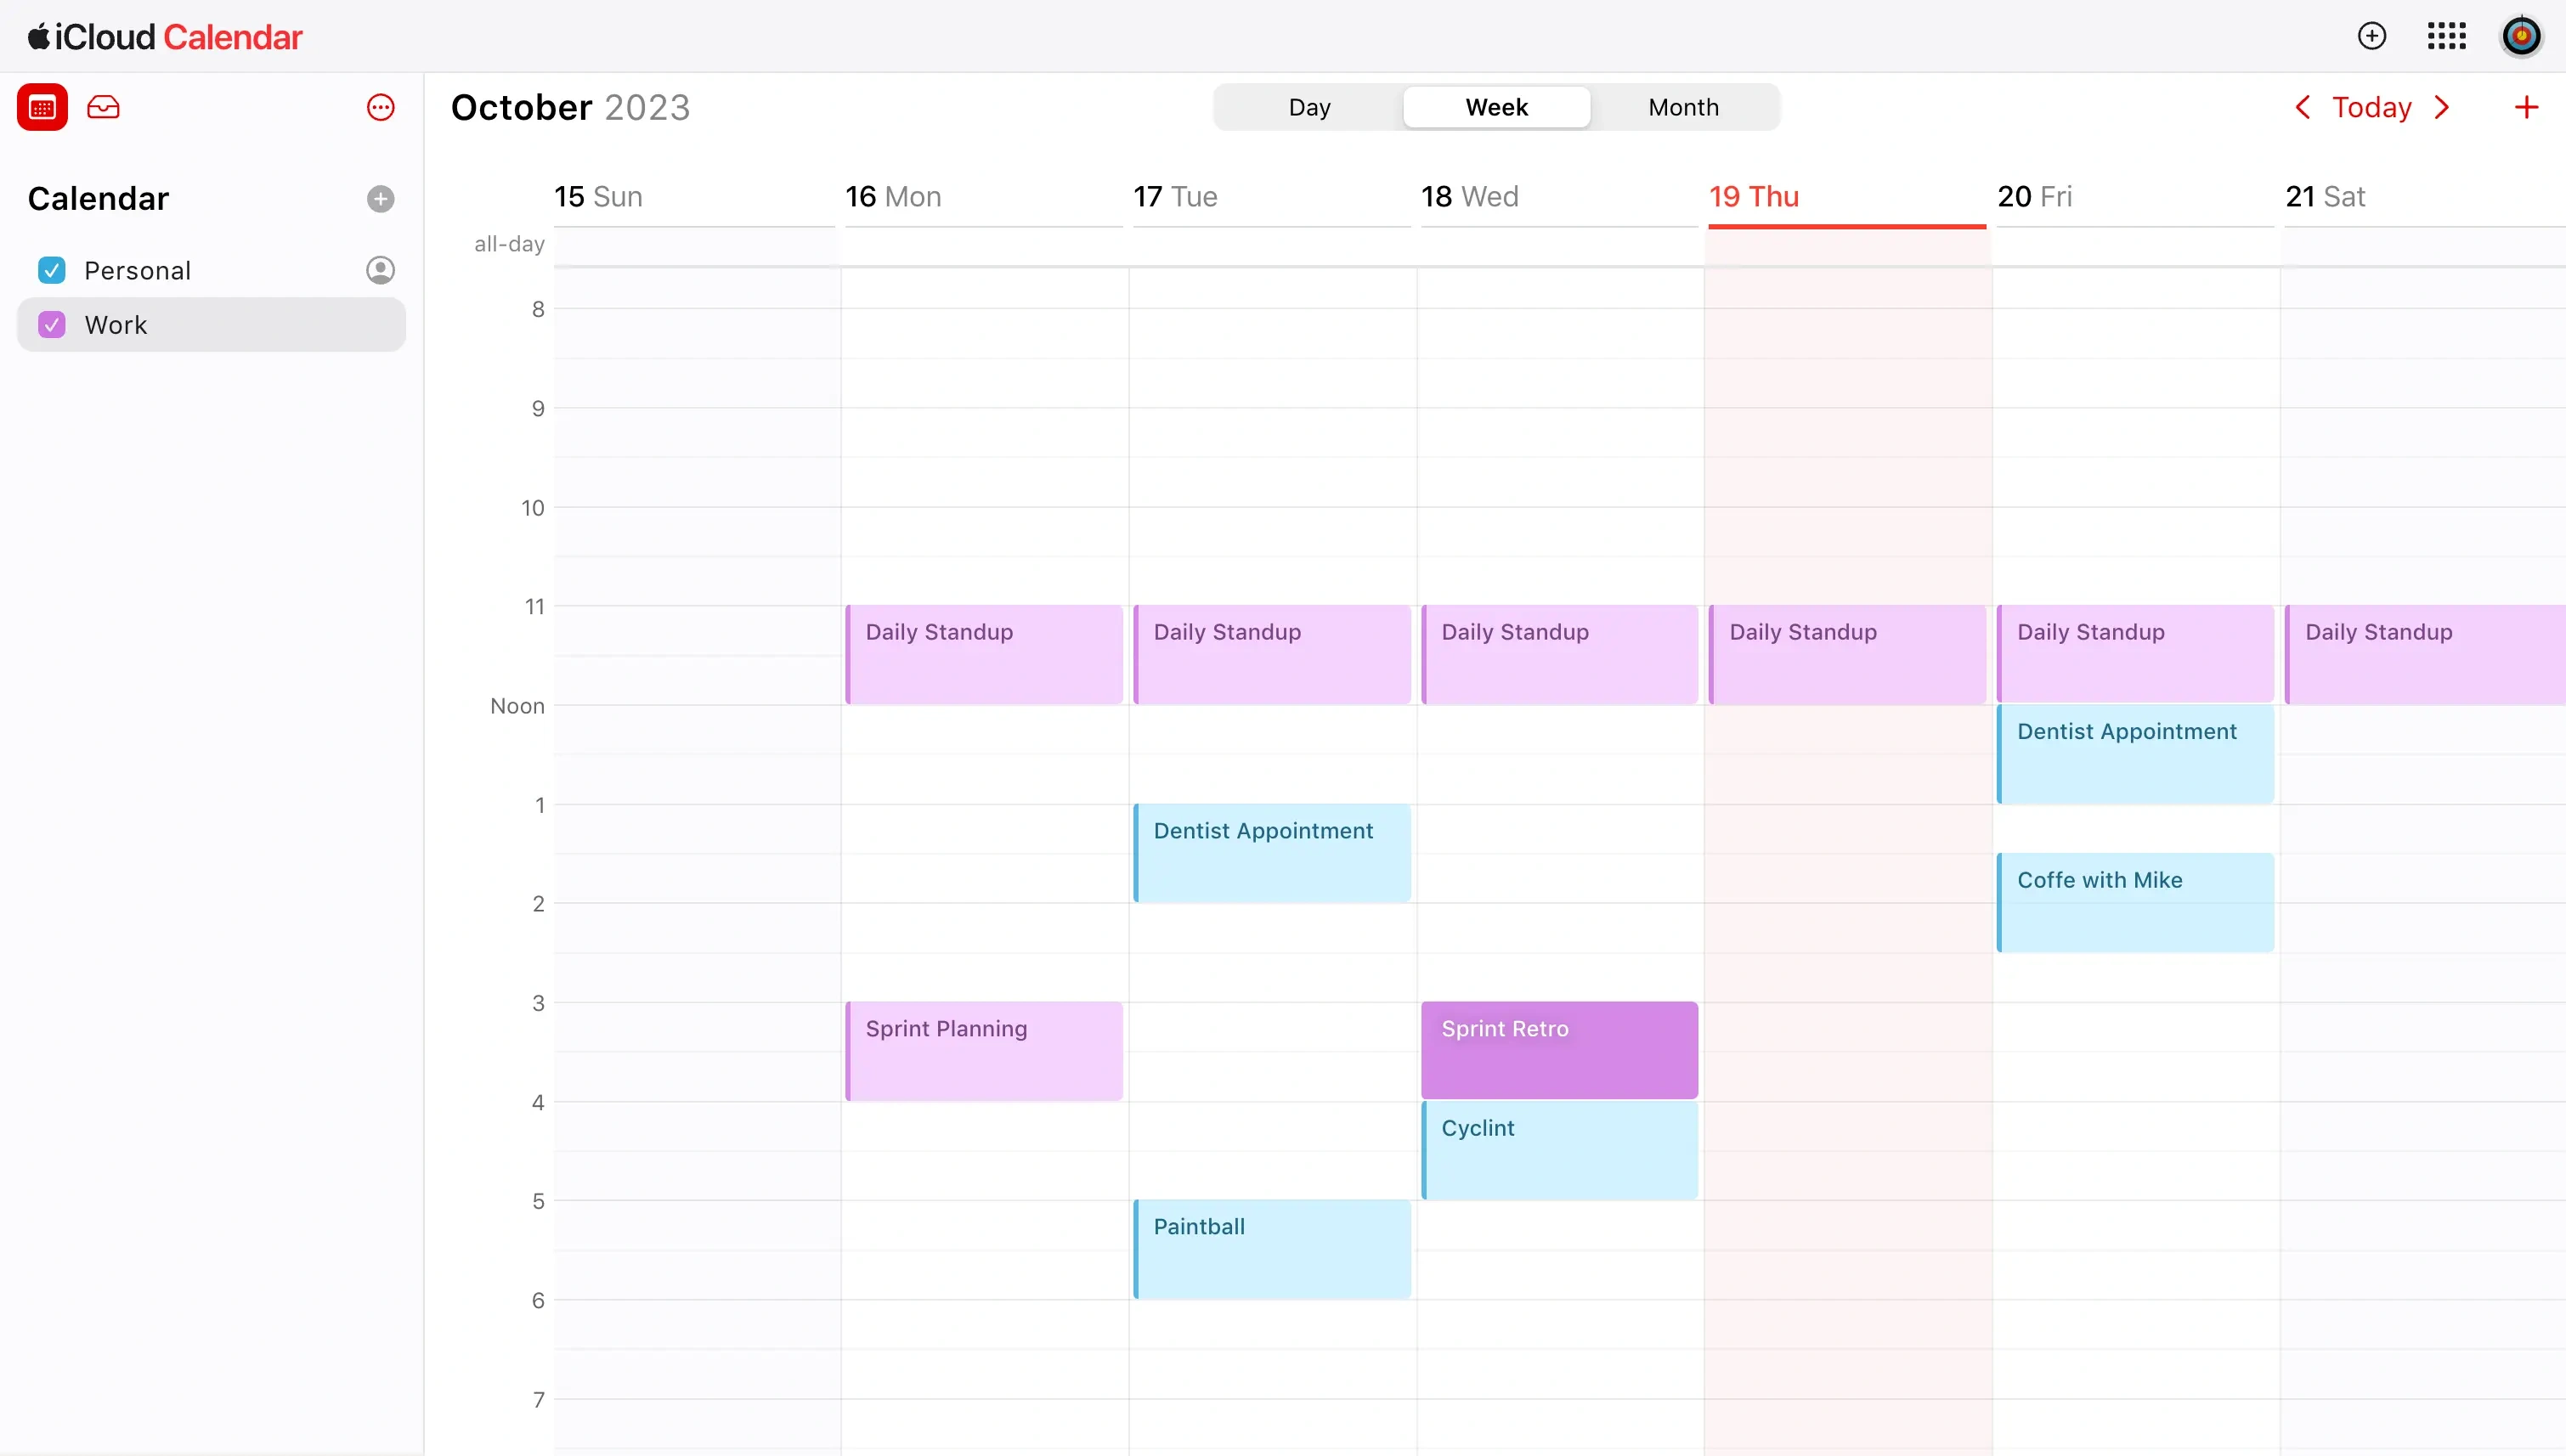 Apple Calendar UI